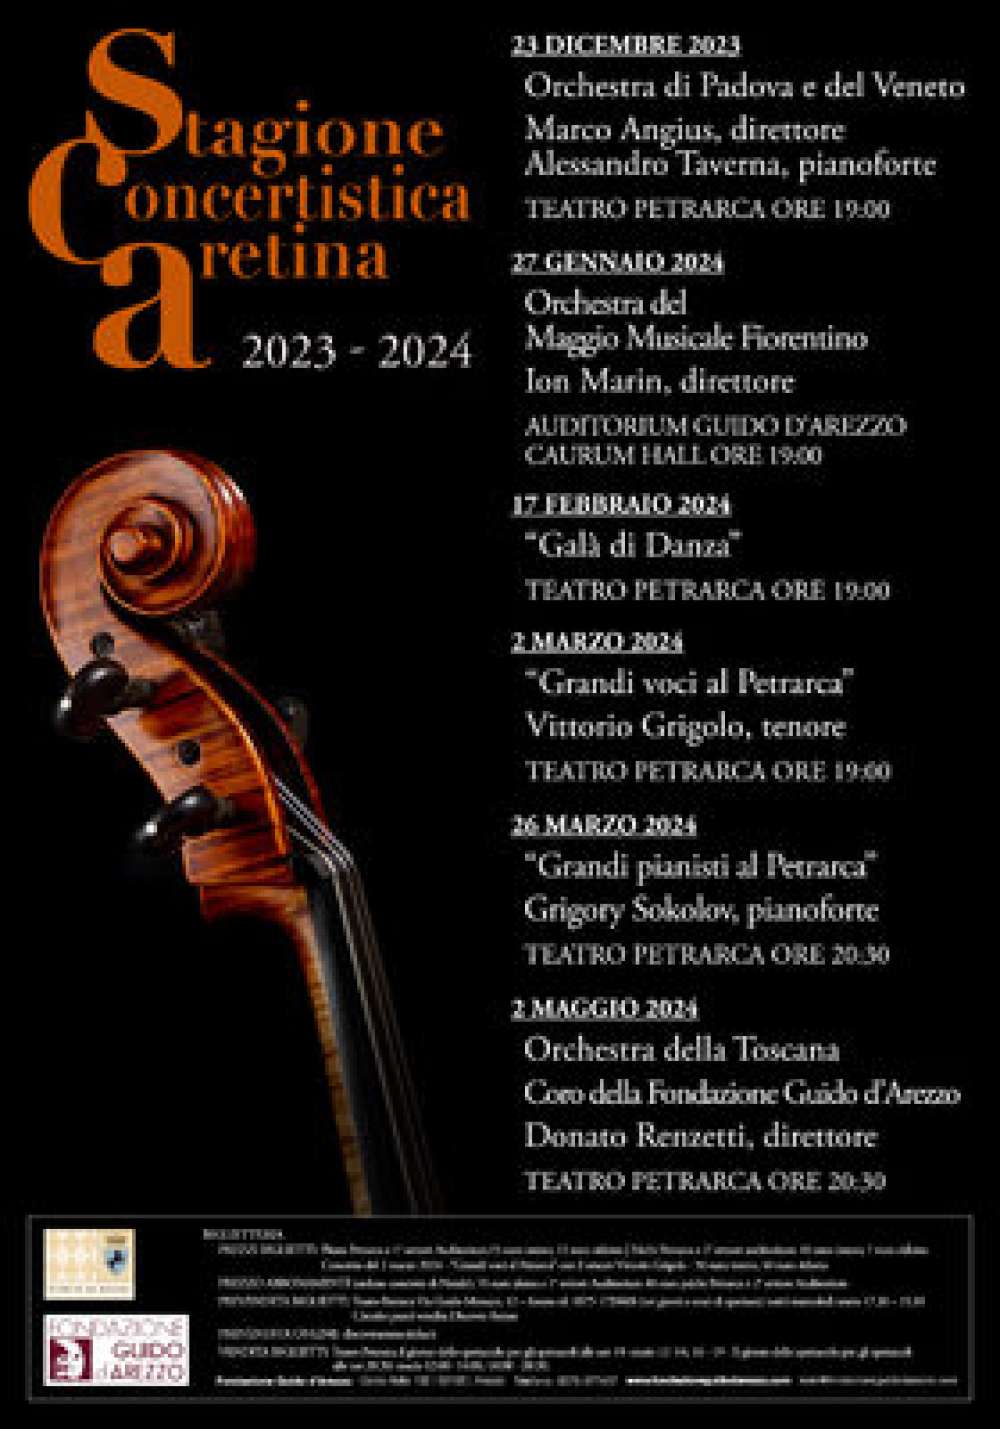 Orchestra Regionale Toscana, Coro del Polifonico, diretti dal Maestro Donato Renzetti - Teatro Petrarca